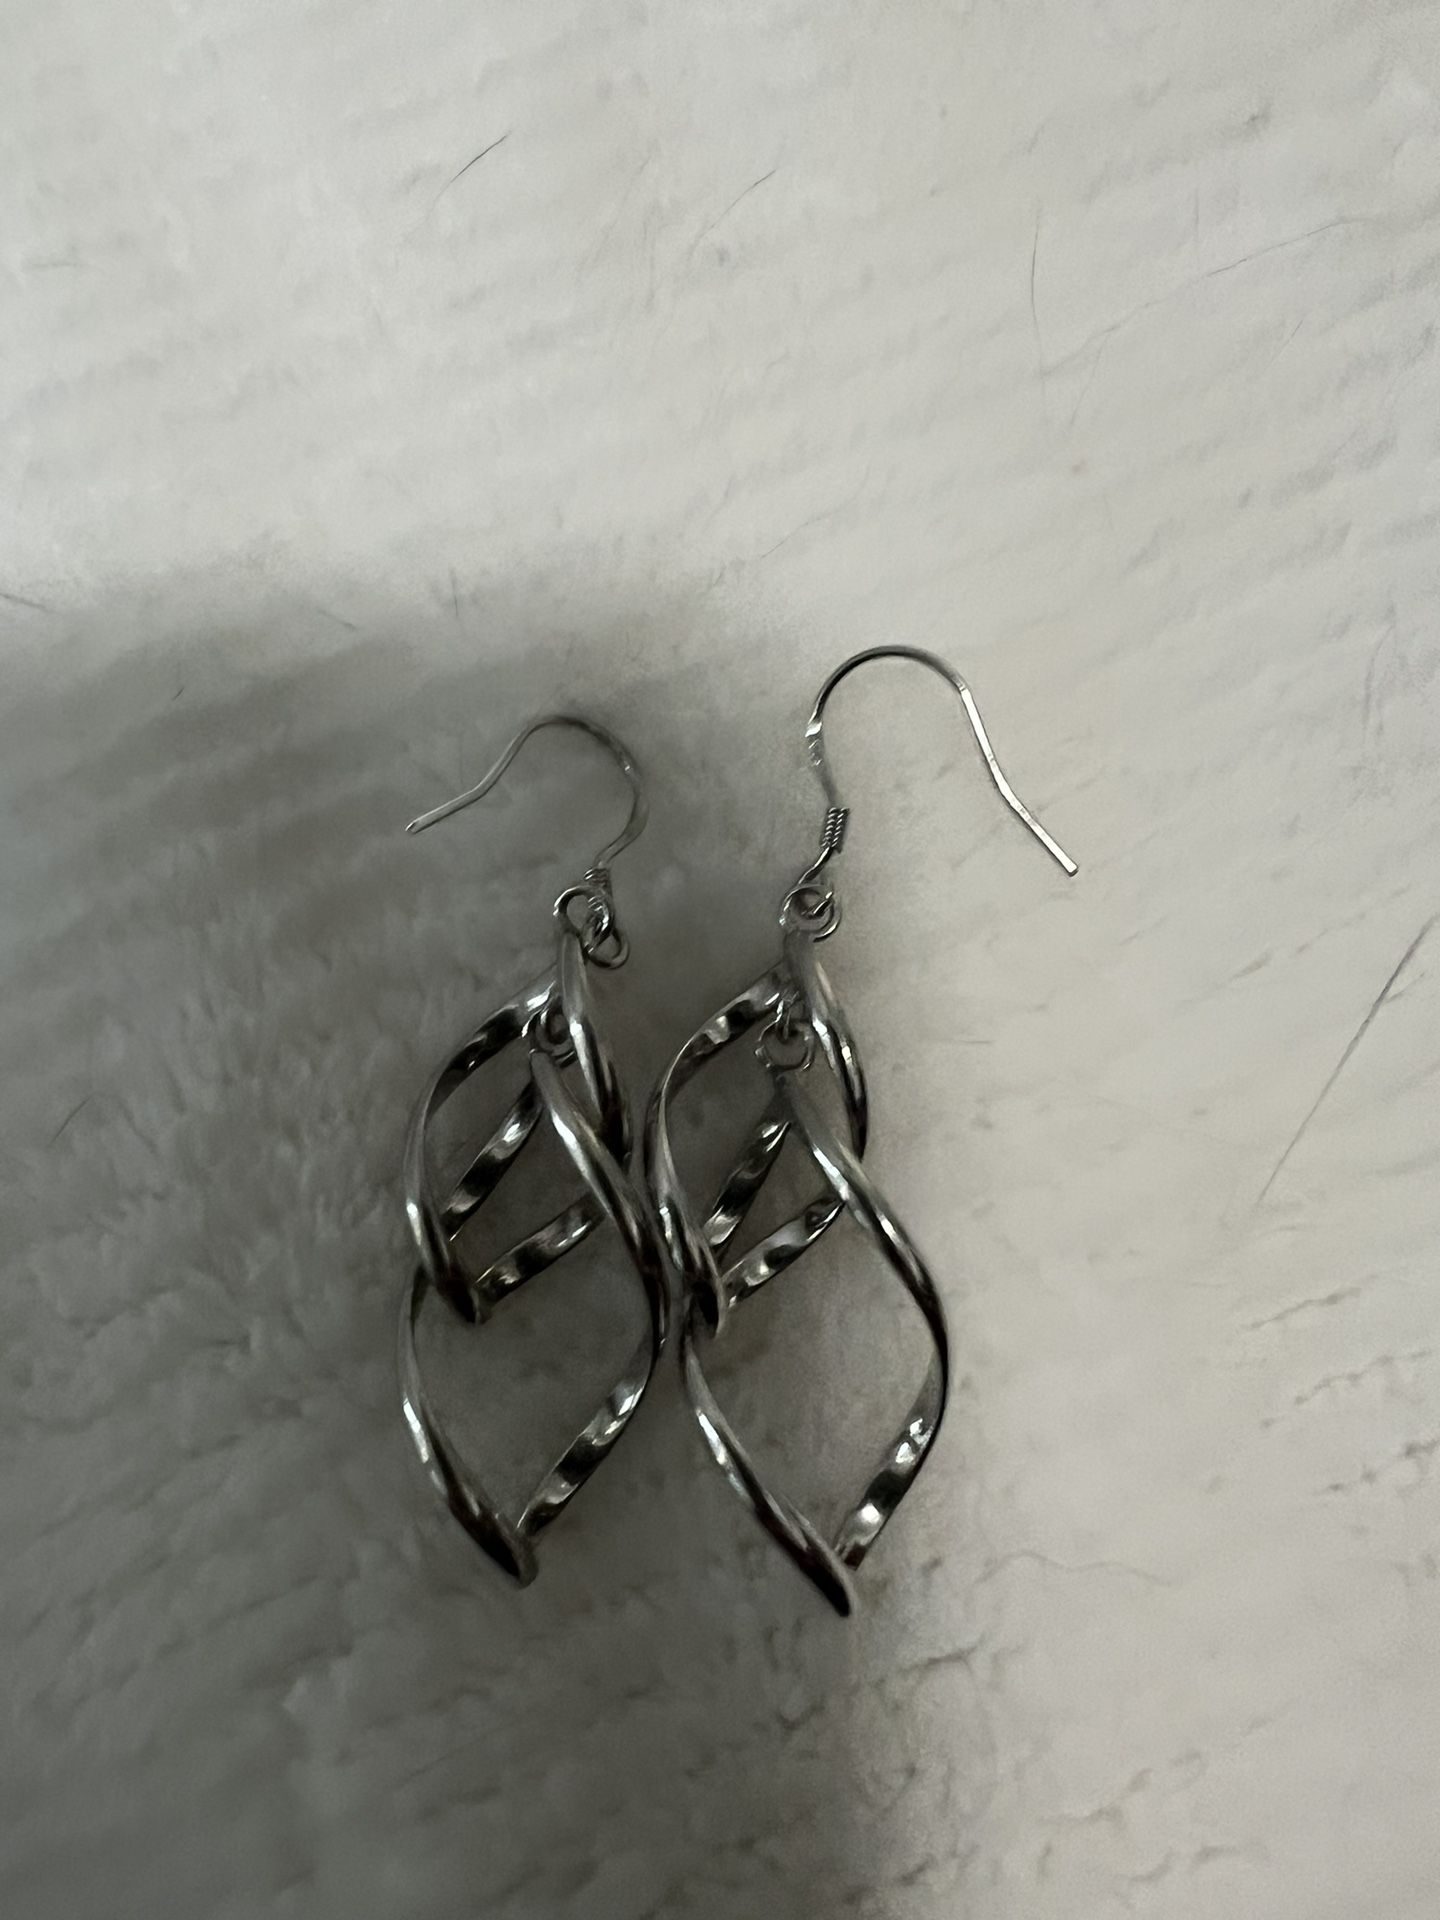 7 Sets Of Silver Dangly Earrings 20.00 OBO